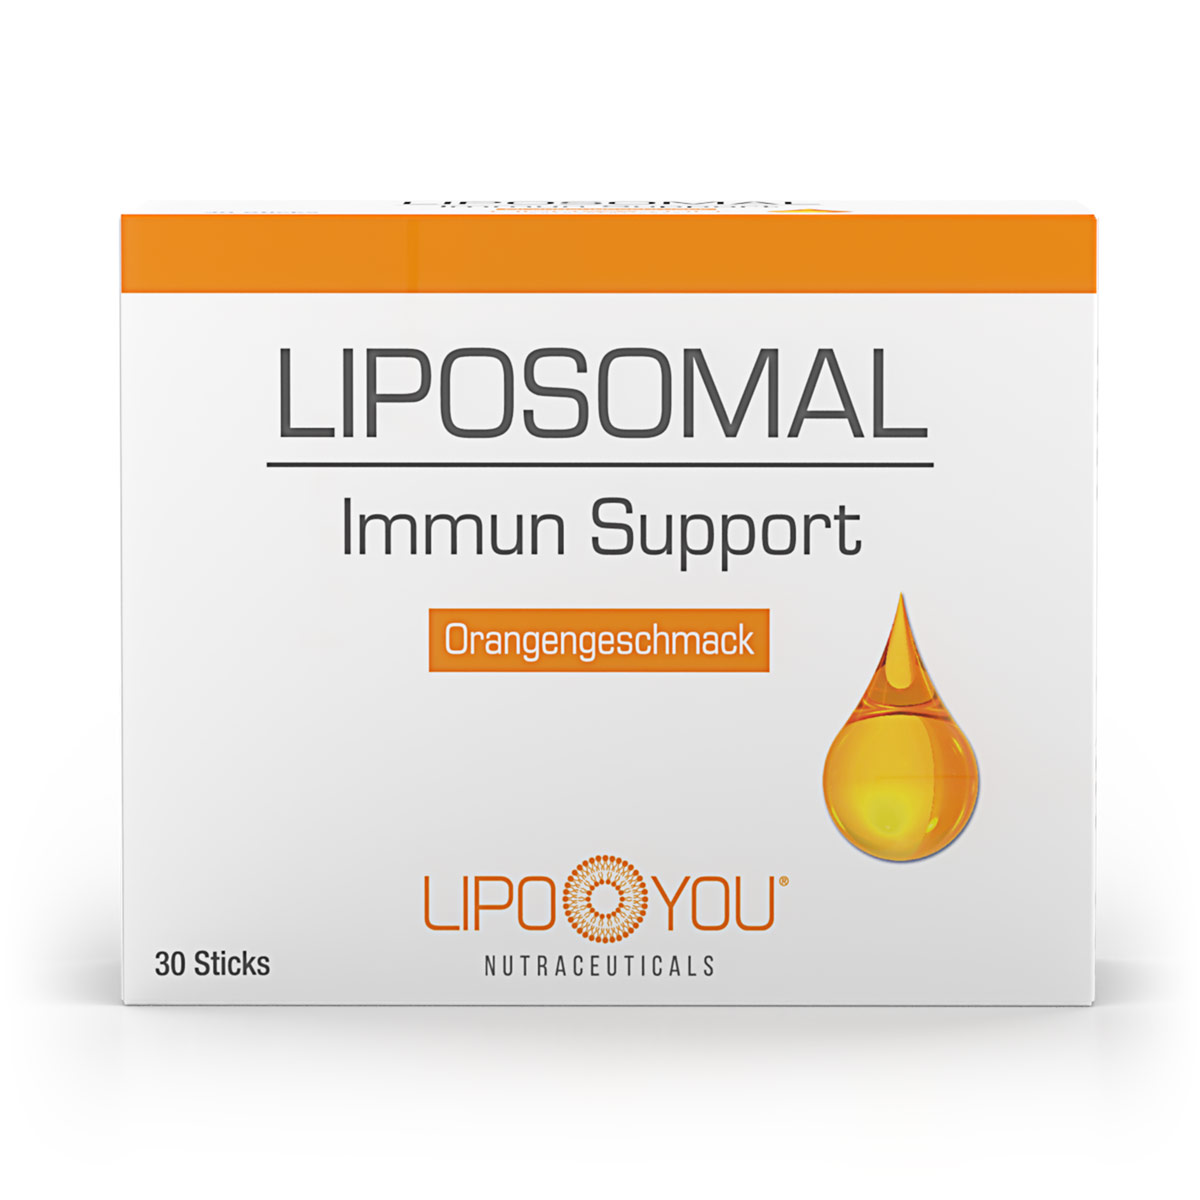 LIPOSOMAL Immun Support Produktverpackung